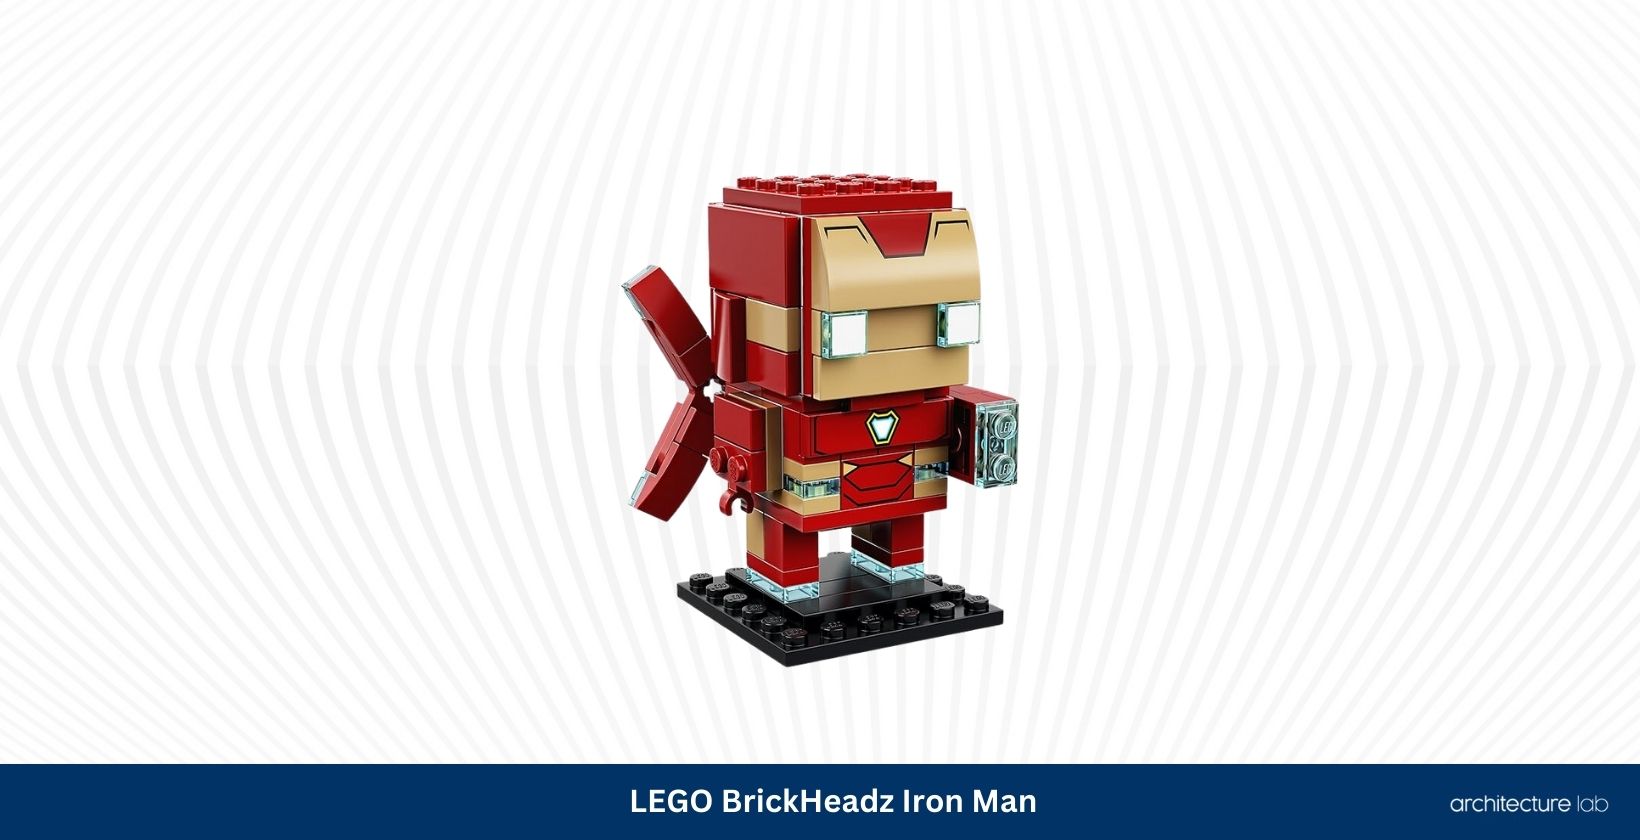 Lego brickheadz iron man